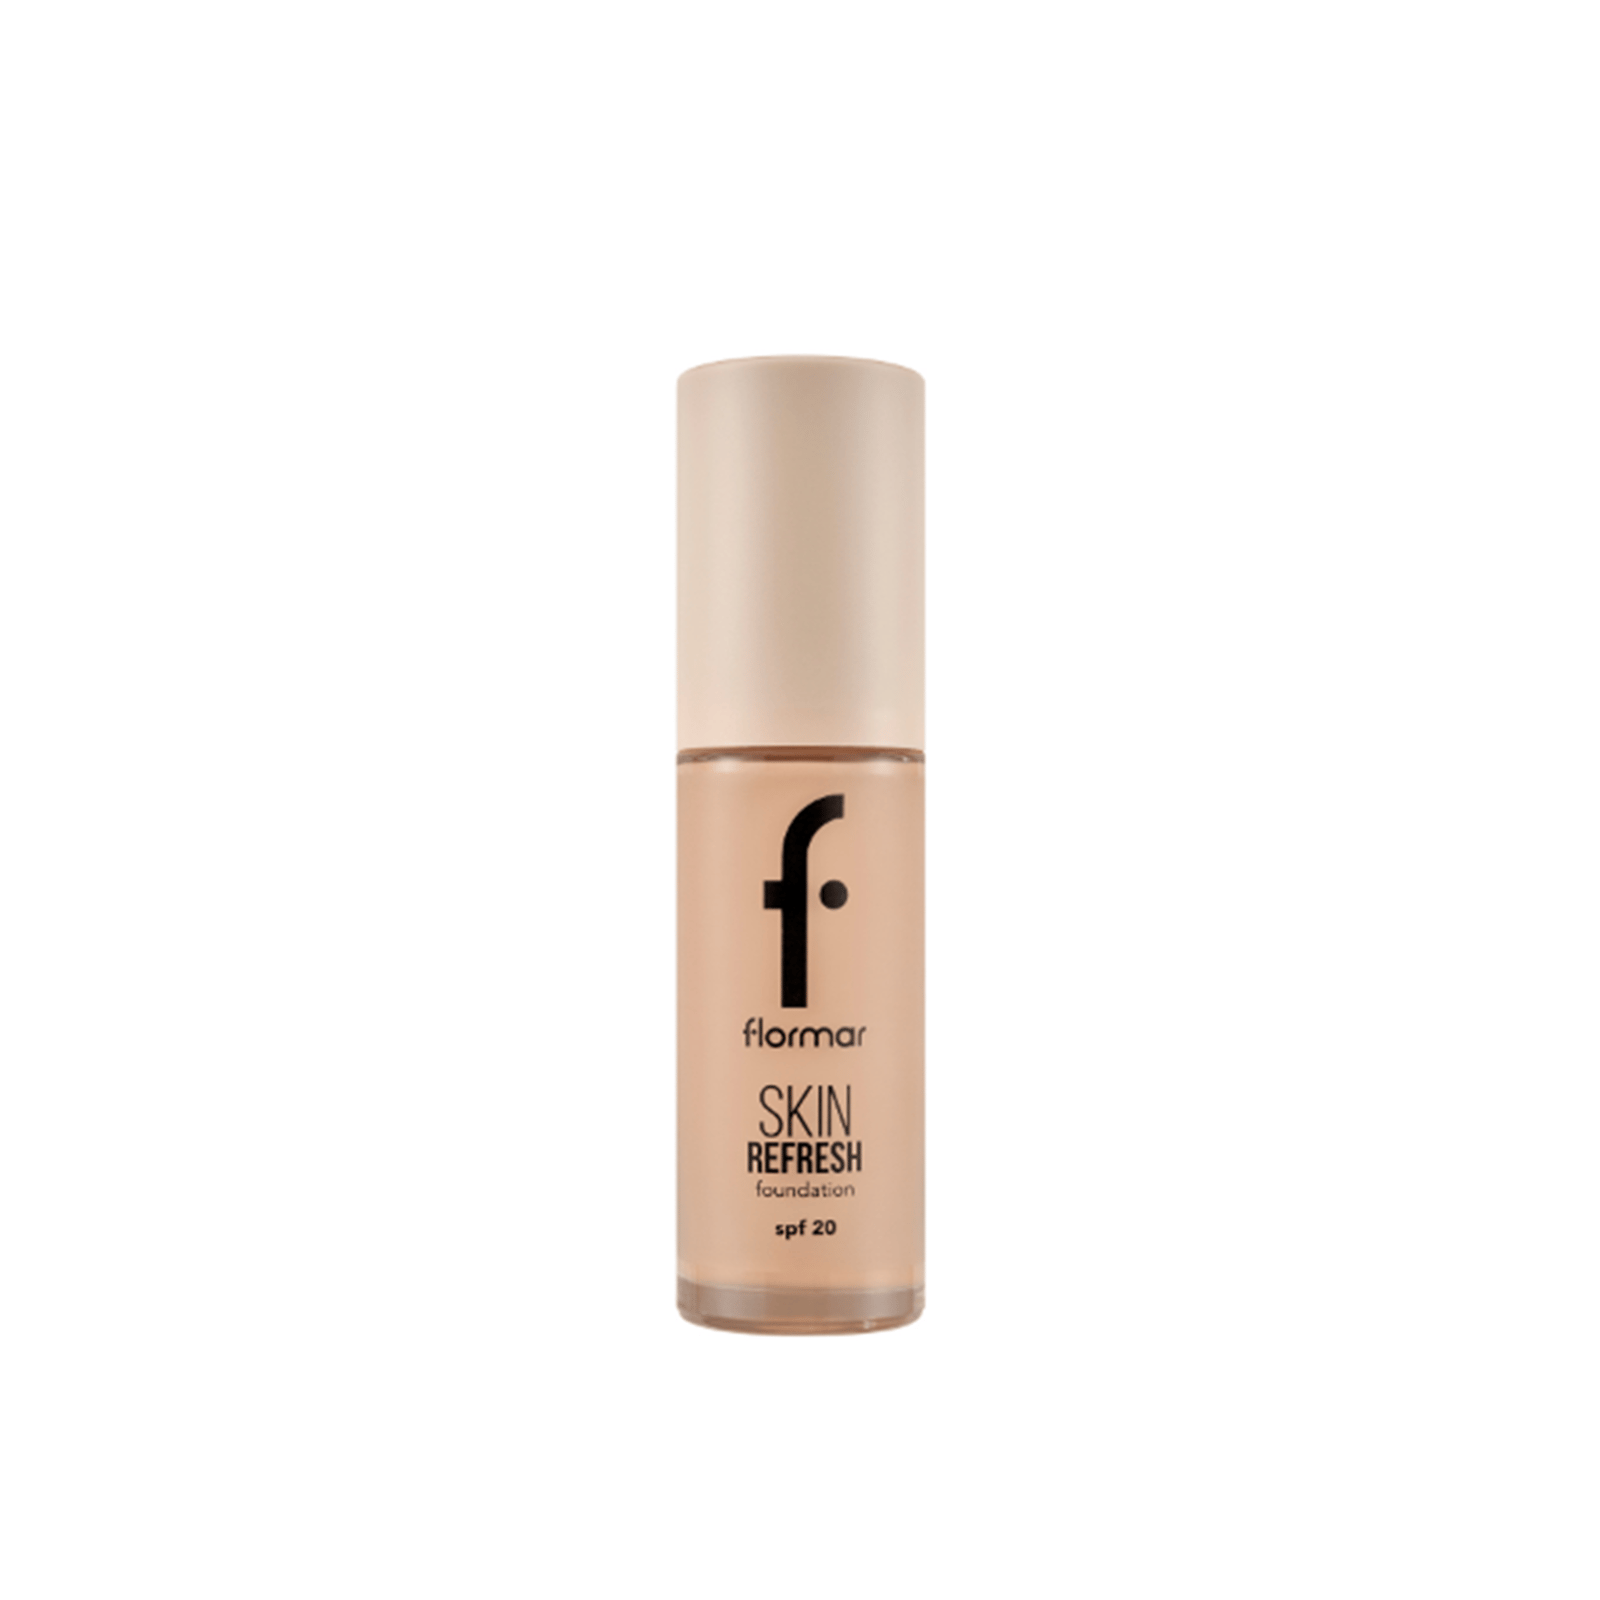 Flormar Skin Refresh Foundation SPF20 004 Rich beige 30ml